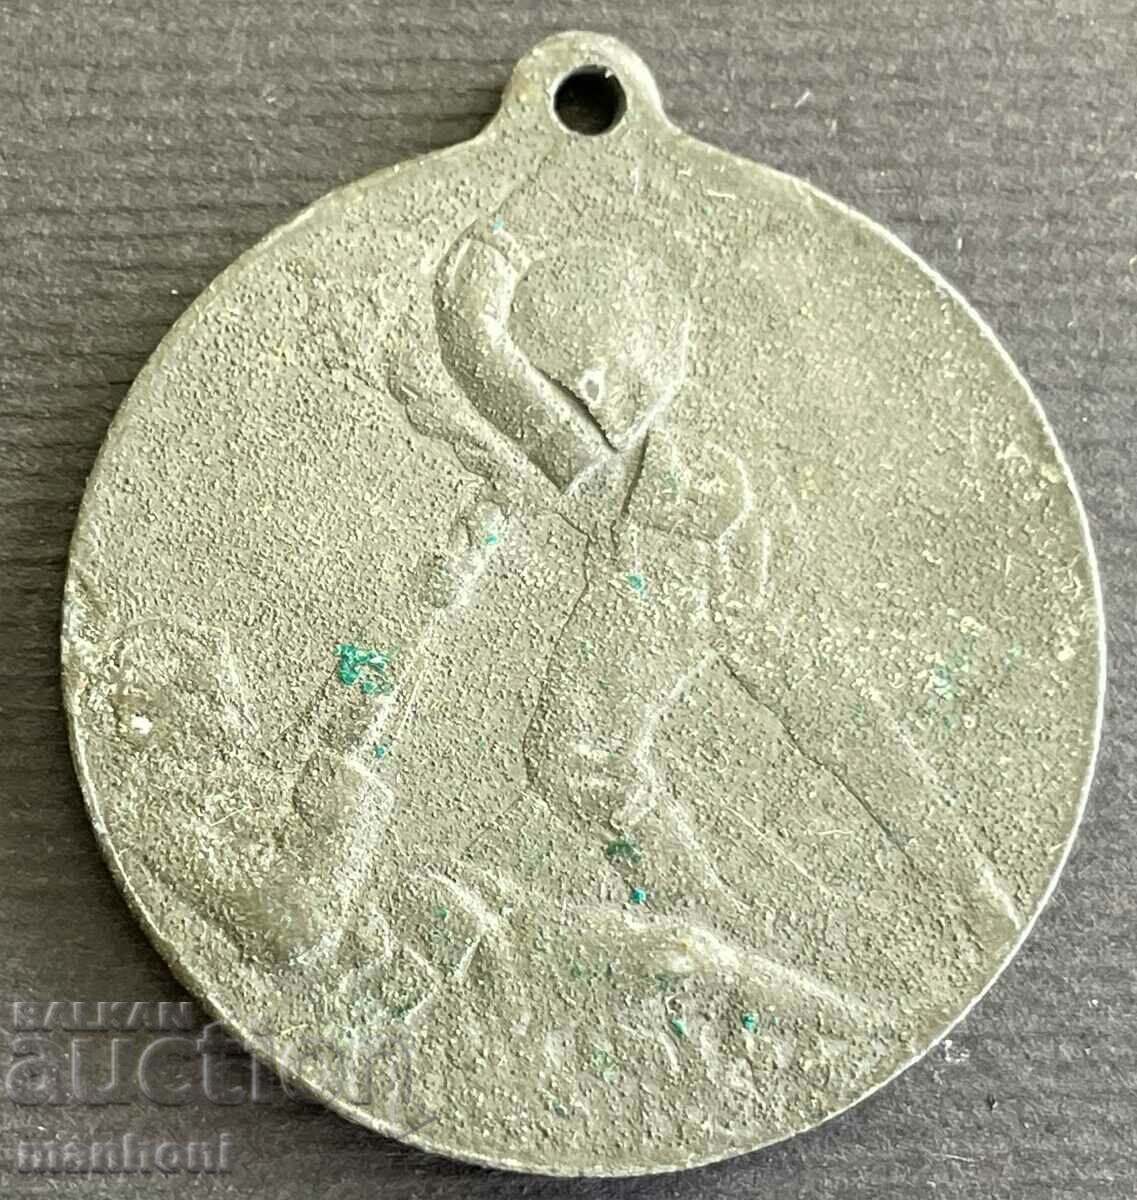 5431 Regatul Bulgariei medalia de luptă rutieră divizia a 9-a Pleven PSV